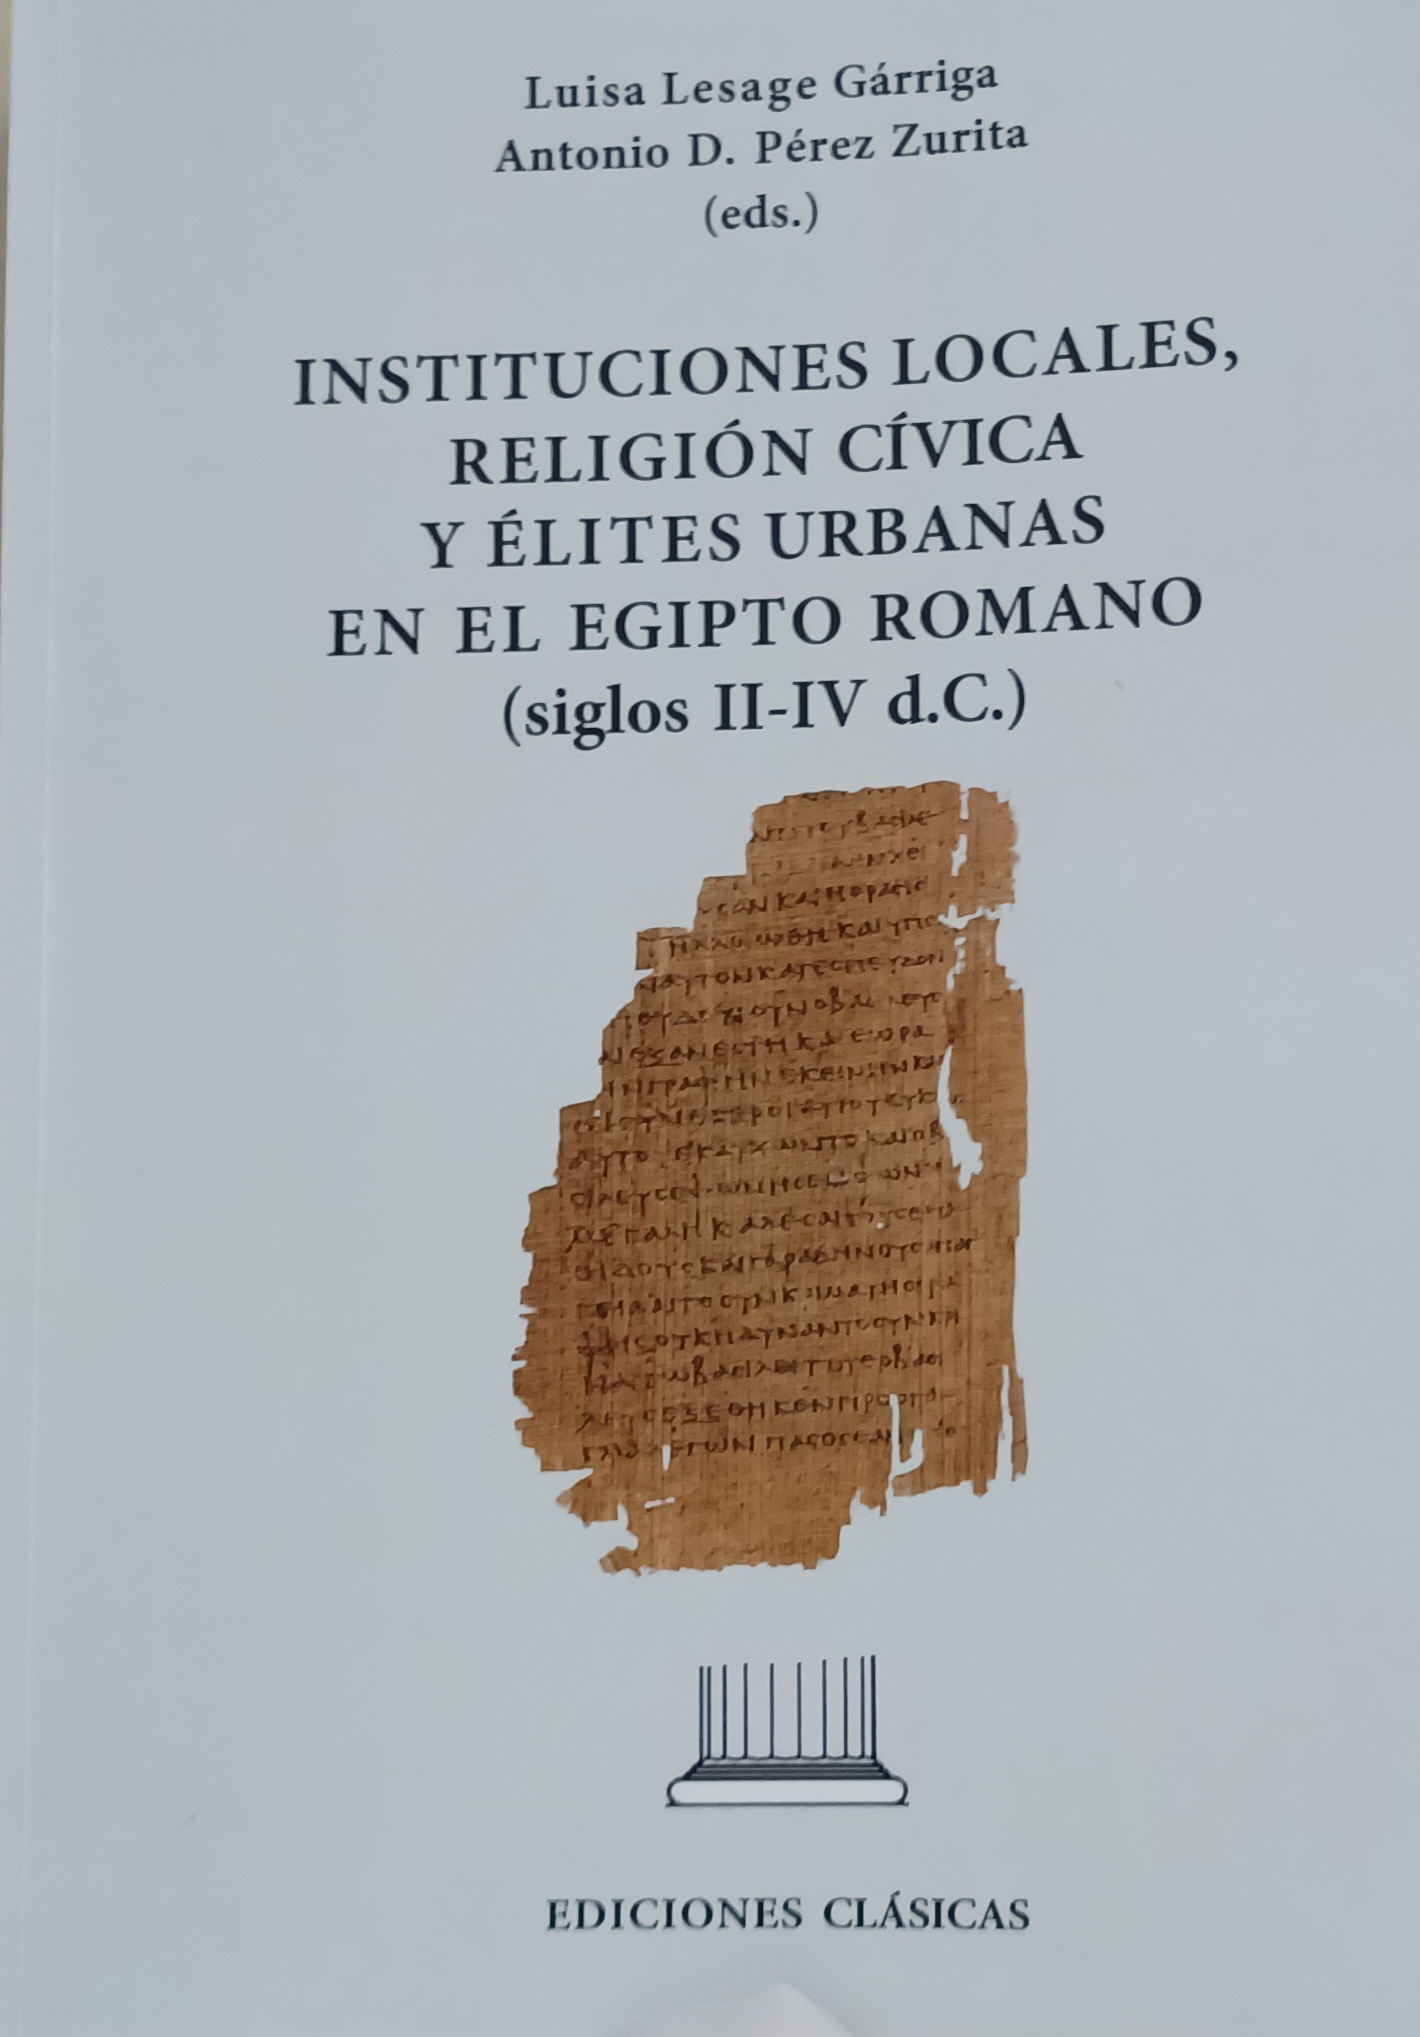 Imagen de portada del libro Instituciones locales, religión cívica y élites urbanas en el Egipto romano